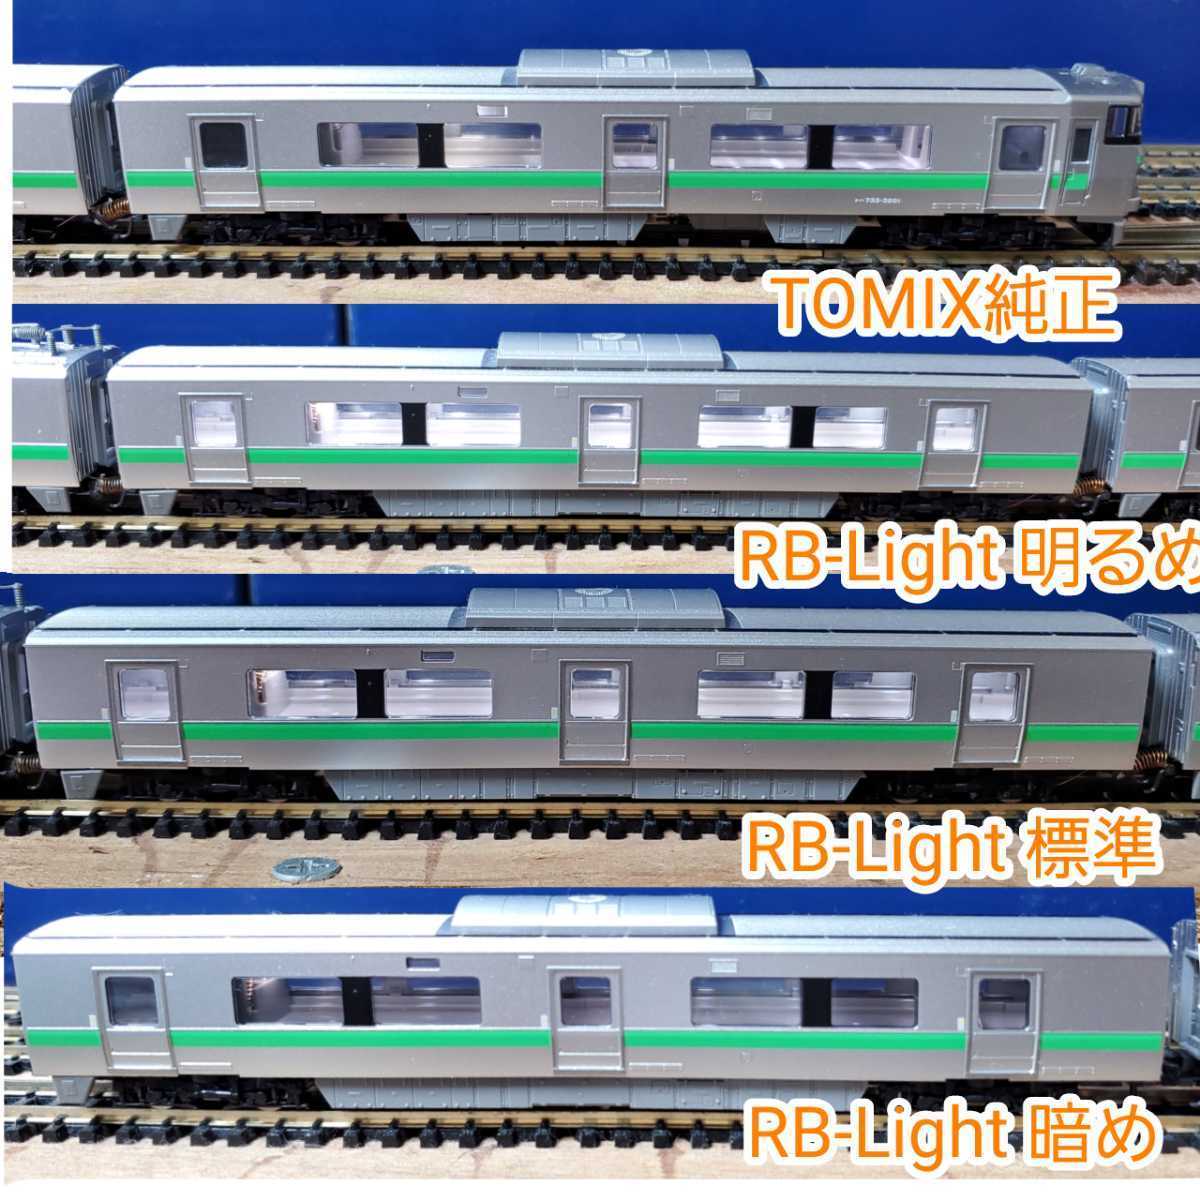 新品本物 RB-Light Ver.4.0 はんだ不要版 34本セットKATO TOMIX 